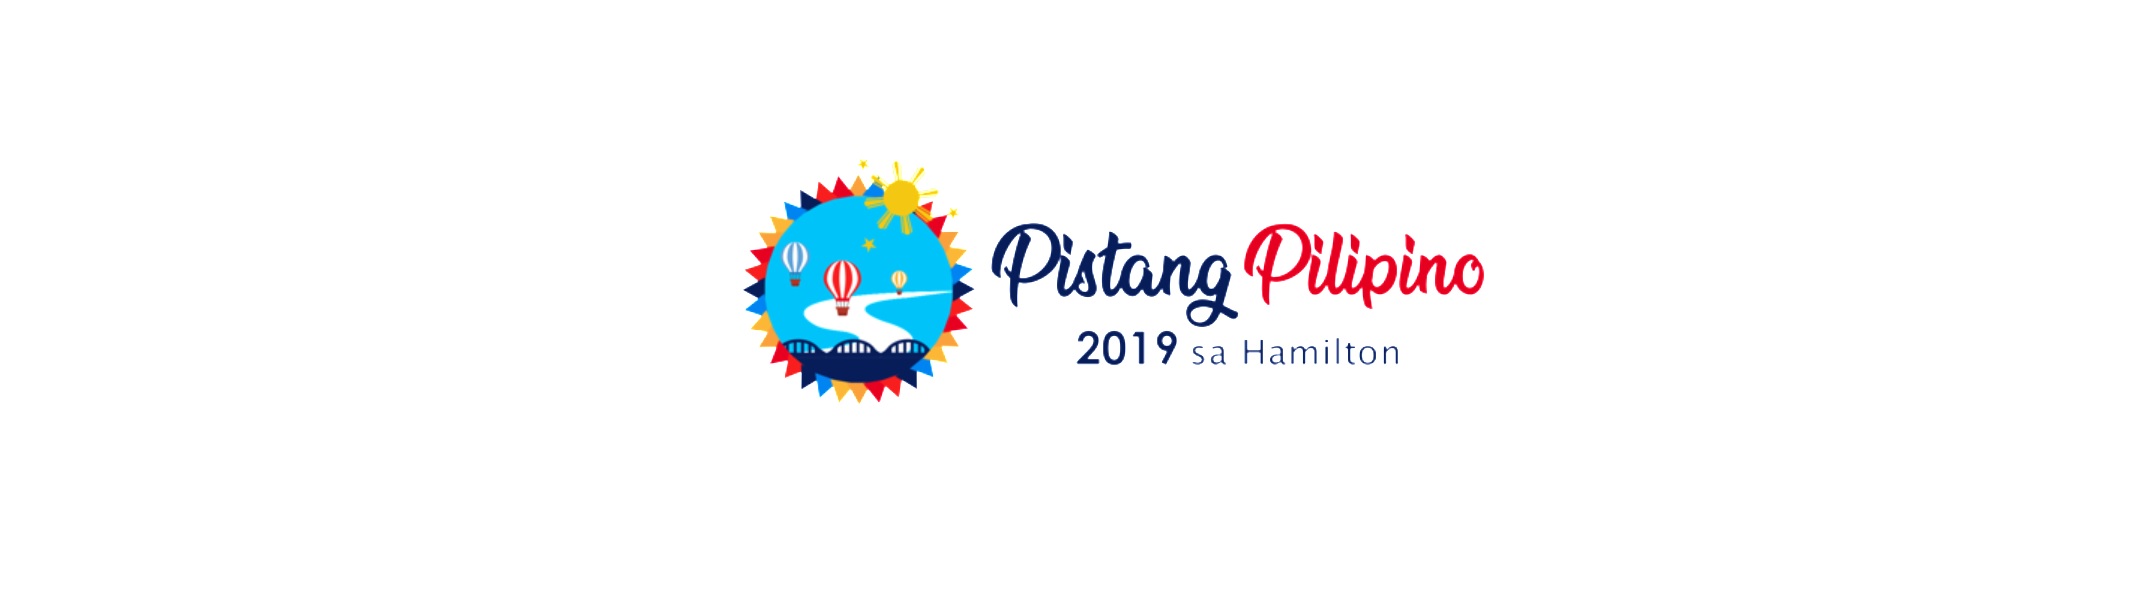 pistang pinoy sa hamilton 2019